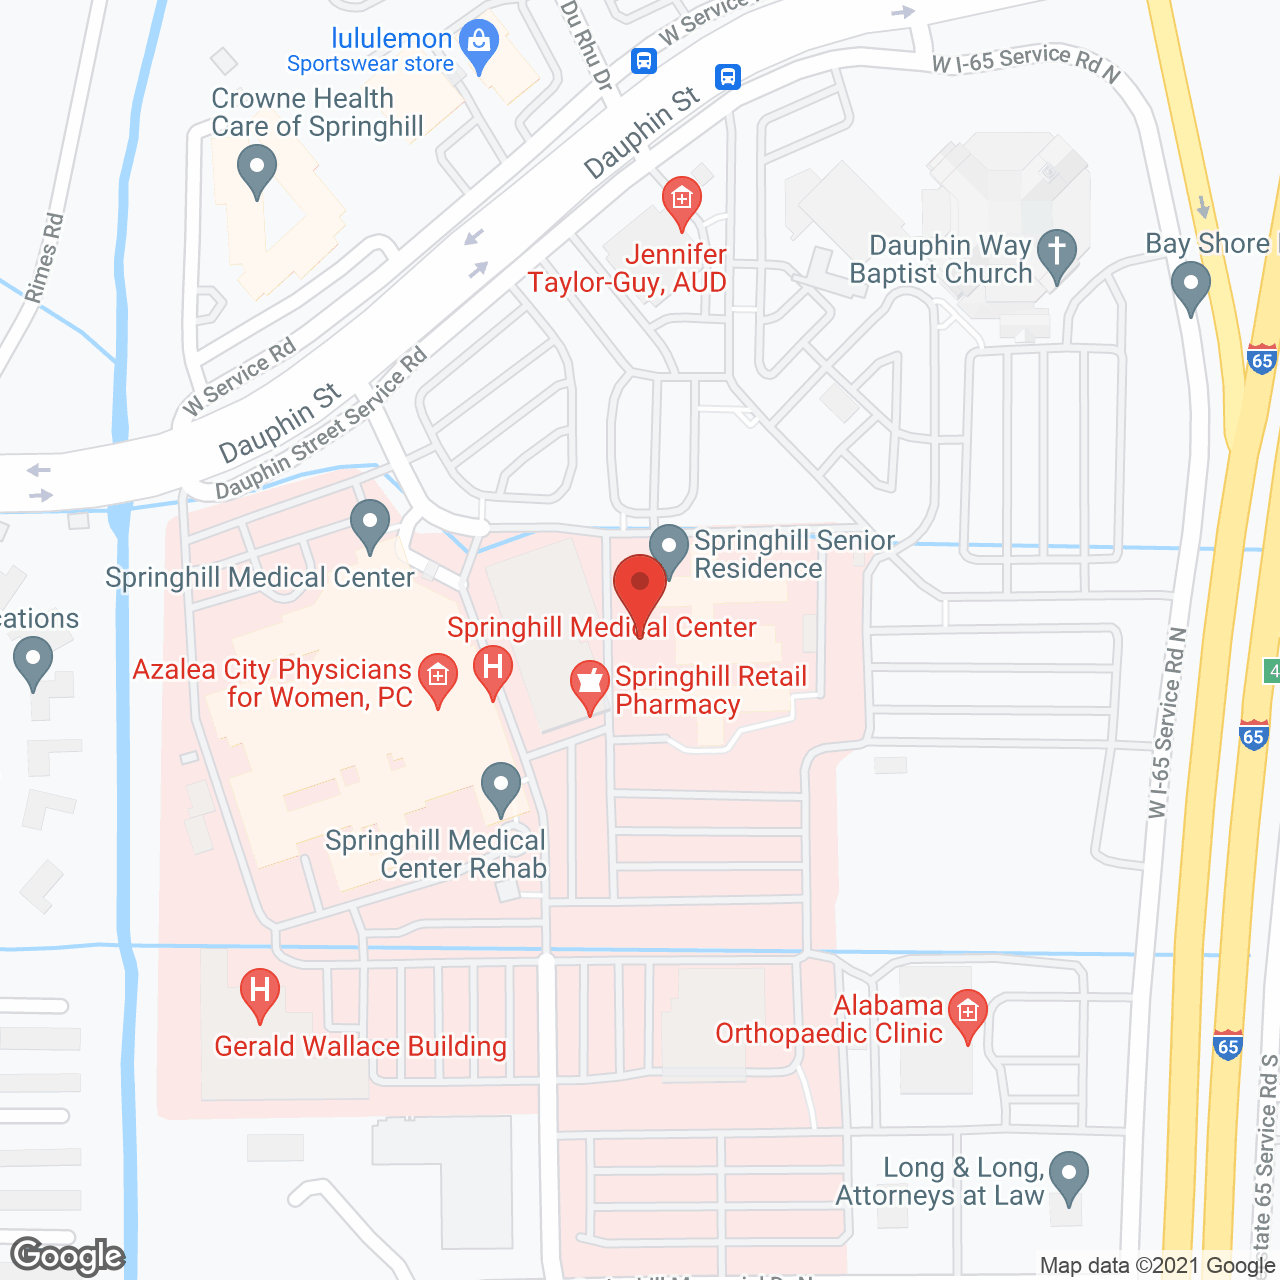 Springhill Senior Residence in google map